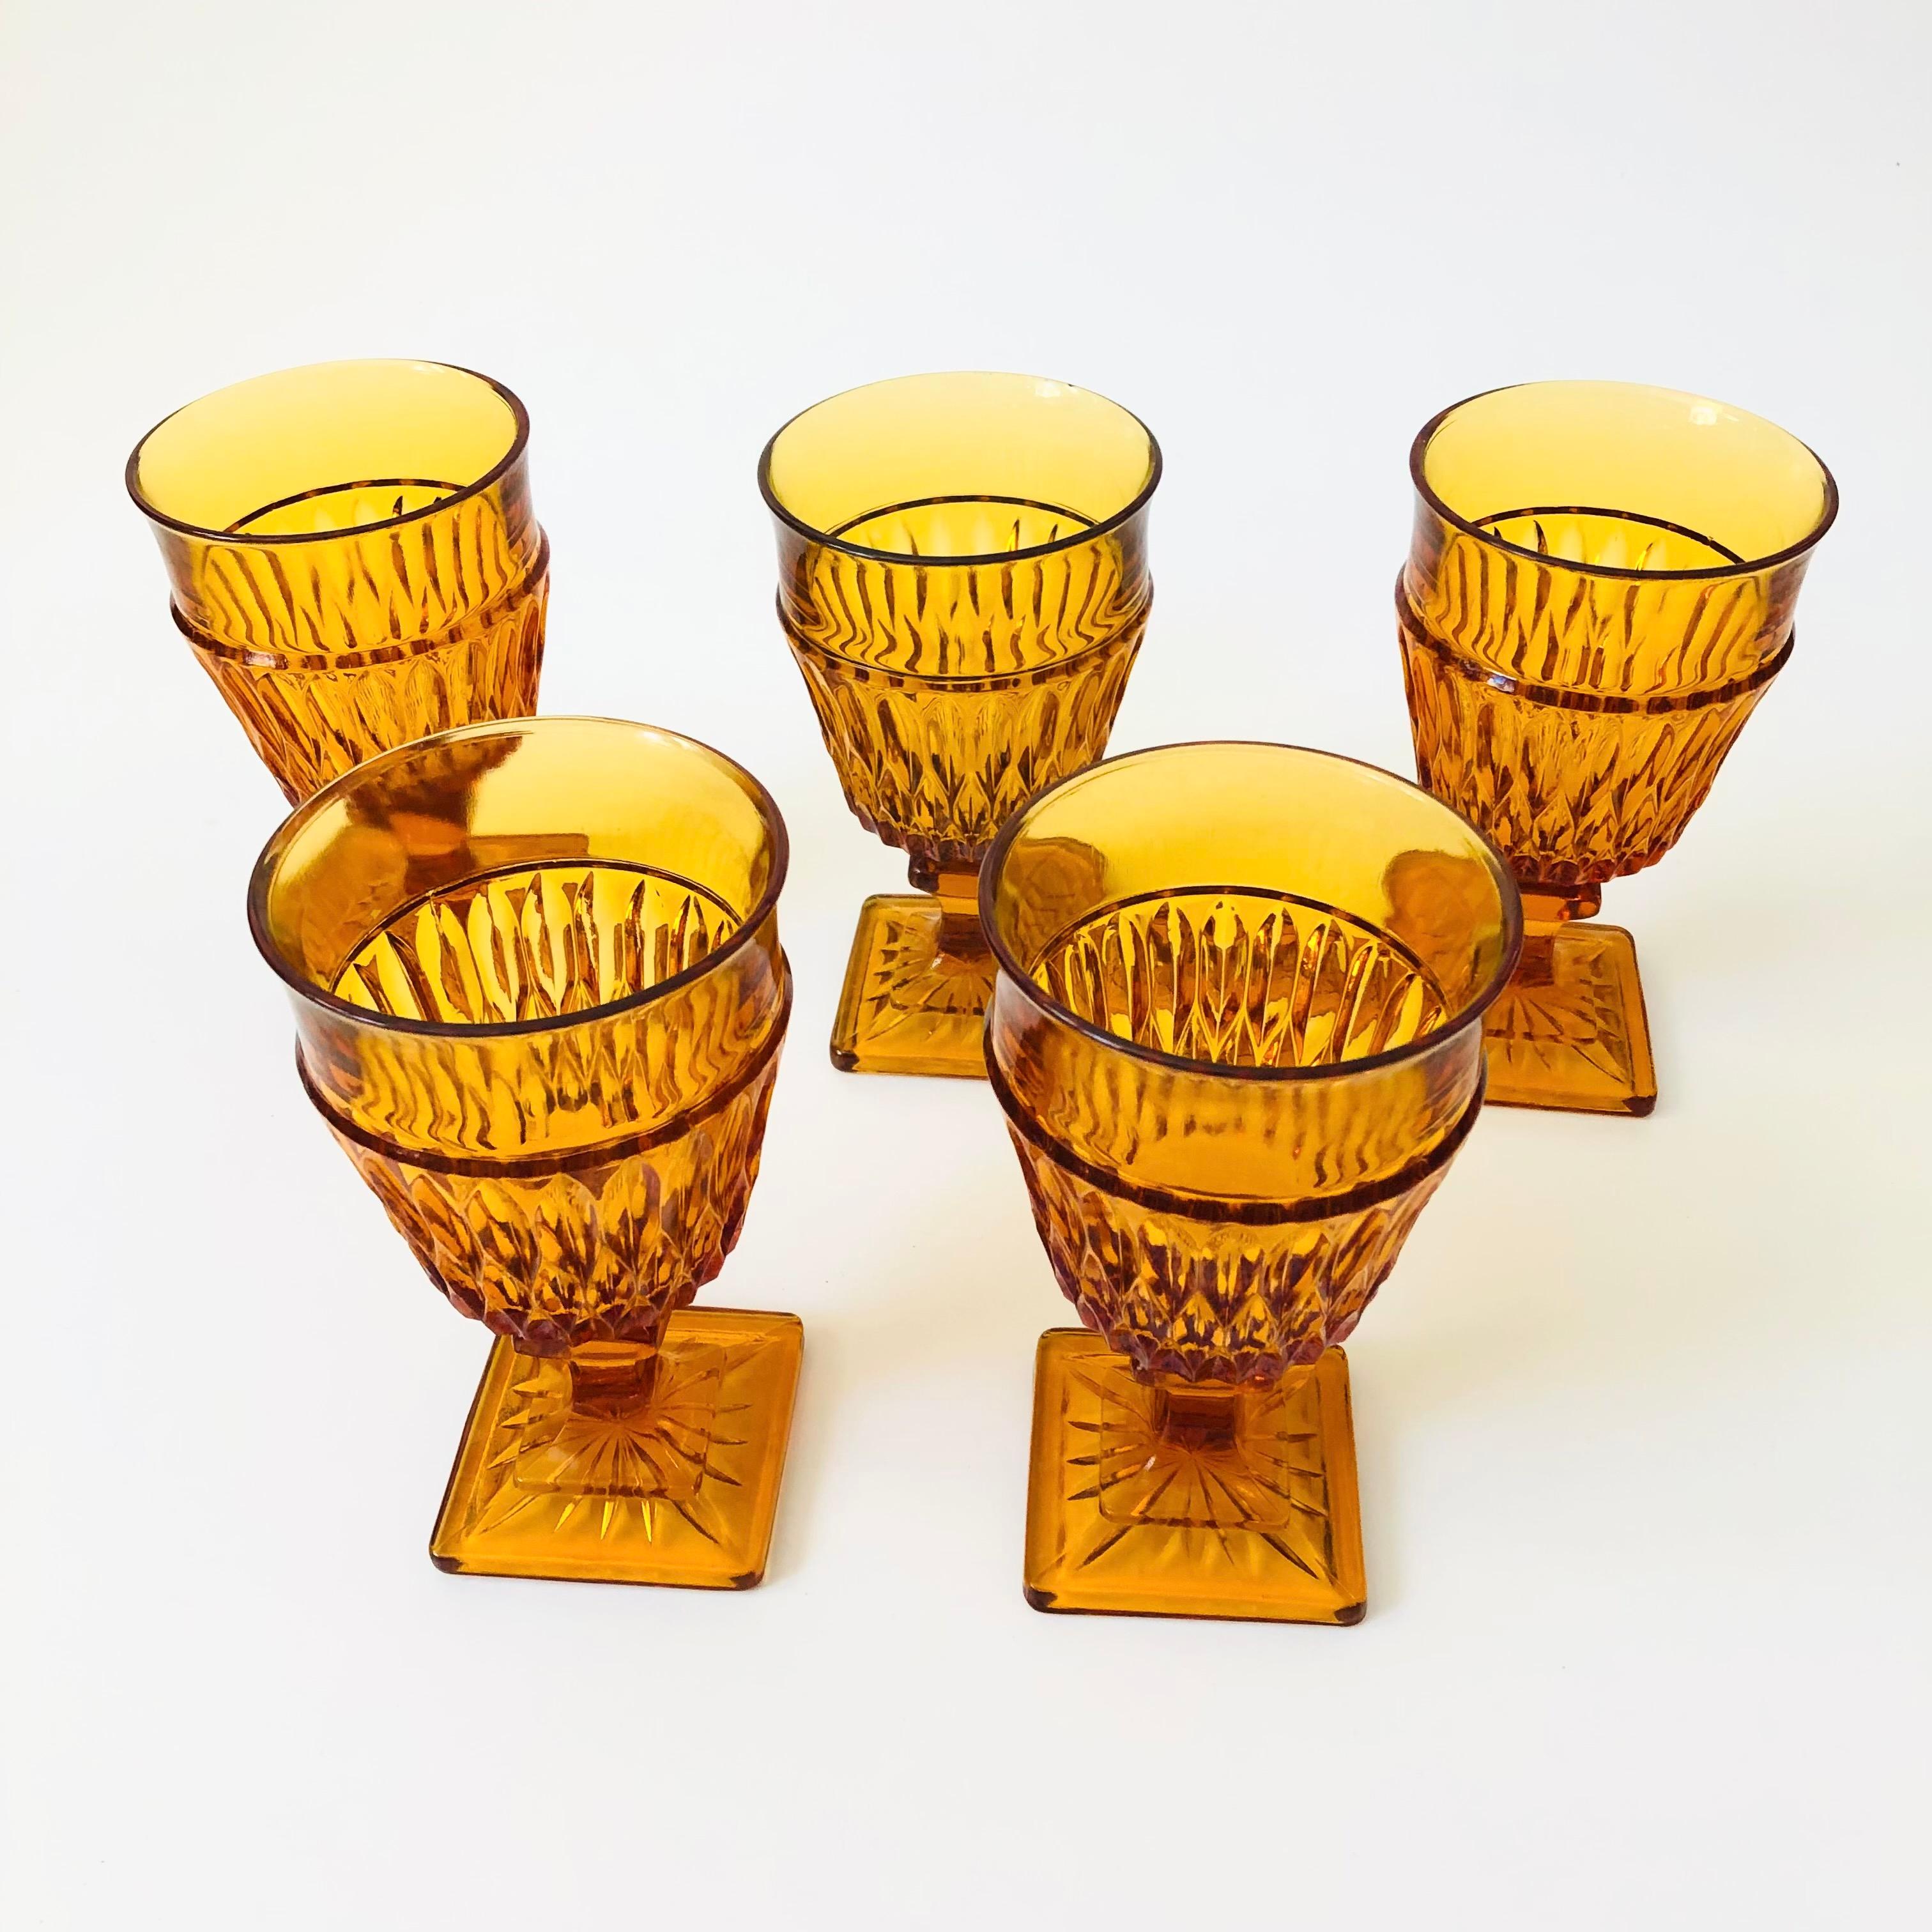 Un ensemble de 5 superbes gobelets à vin en verre ambré avec un joli design orné. Fabriqué selon le modèle 